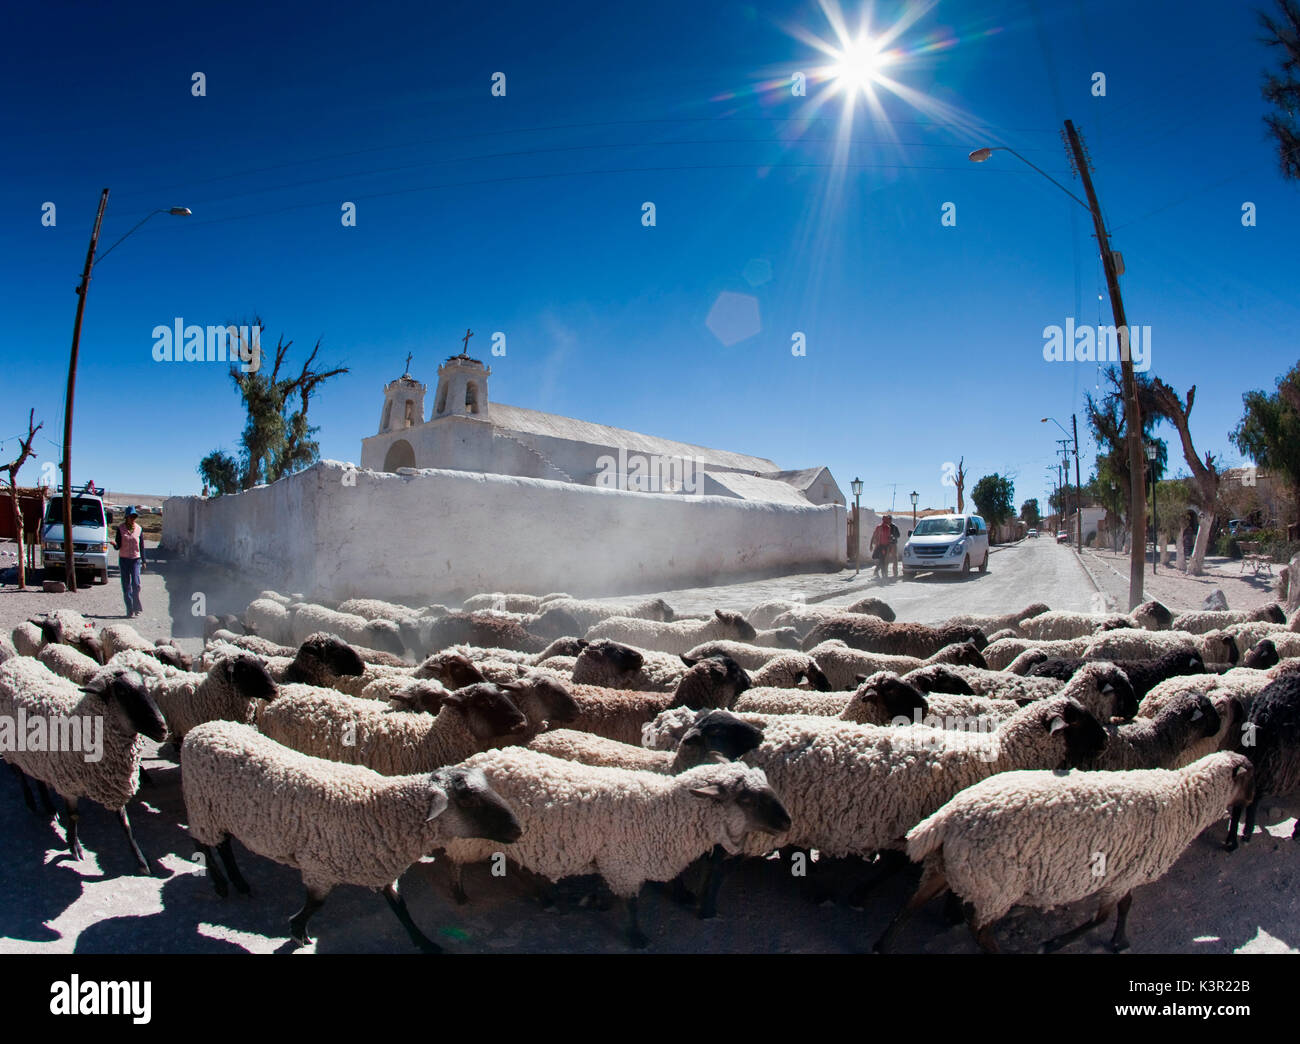 Un troupeau de moutons traversant la route principale de Chiu Chiu une ville au Chili qui a été l'un des arrêts sur la piste de l'Inca et est toujours une halte pour les voyageurs dans le désert. L'Amérique du Sud Banque D'Images